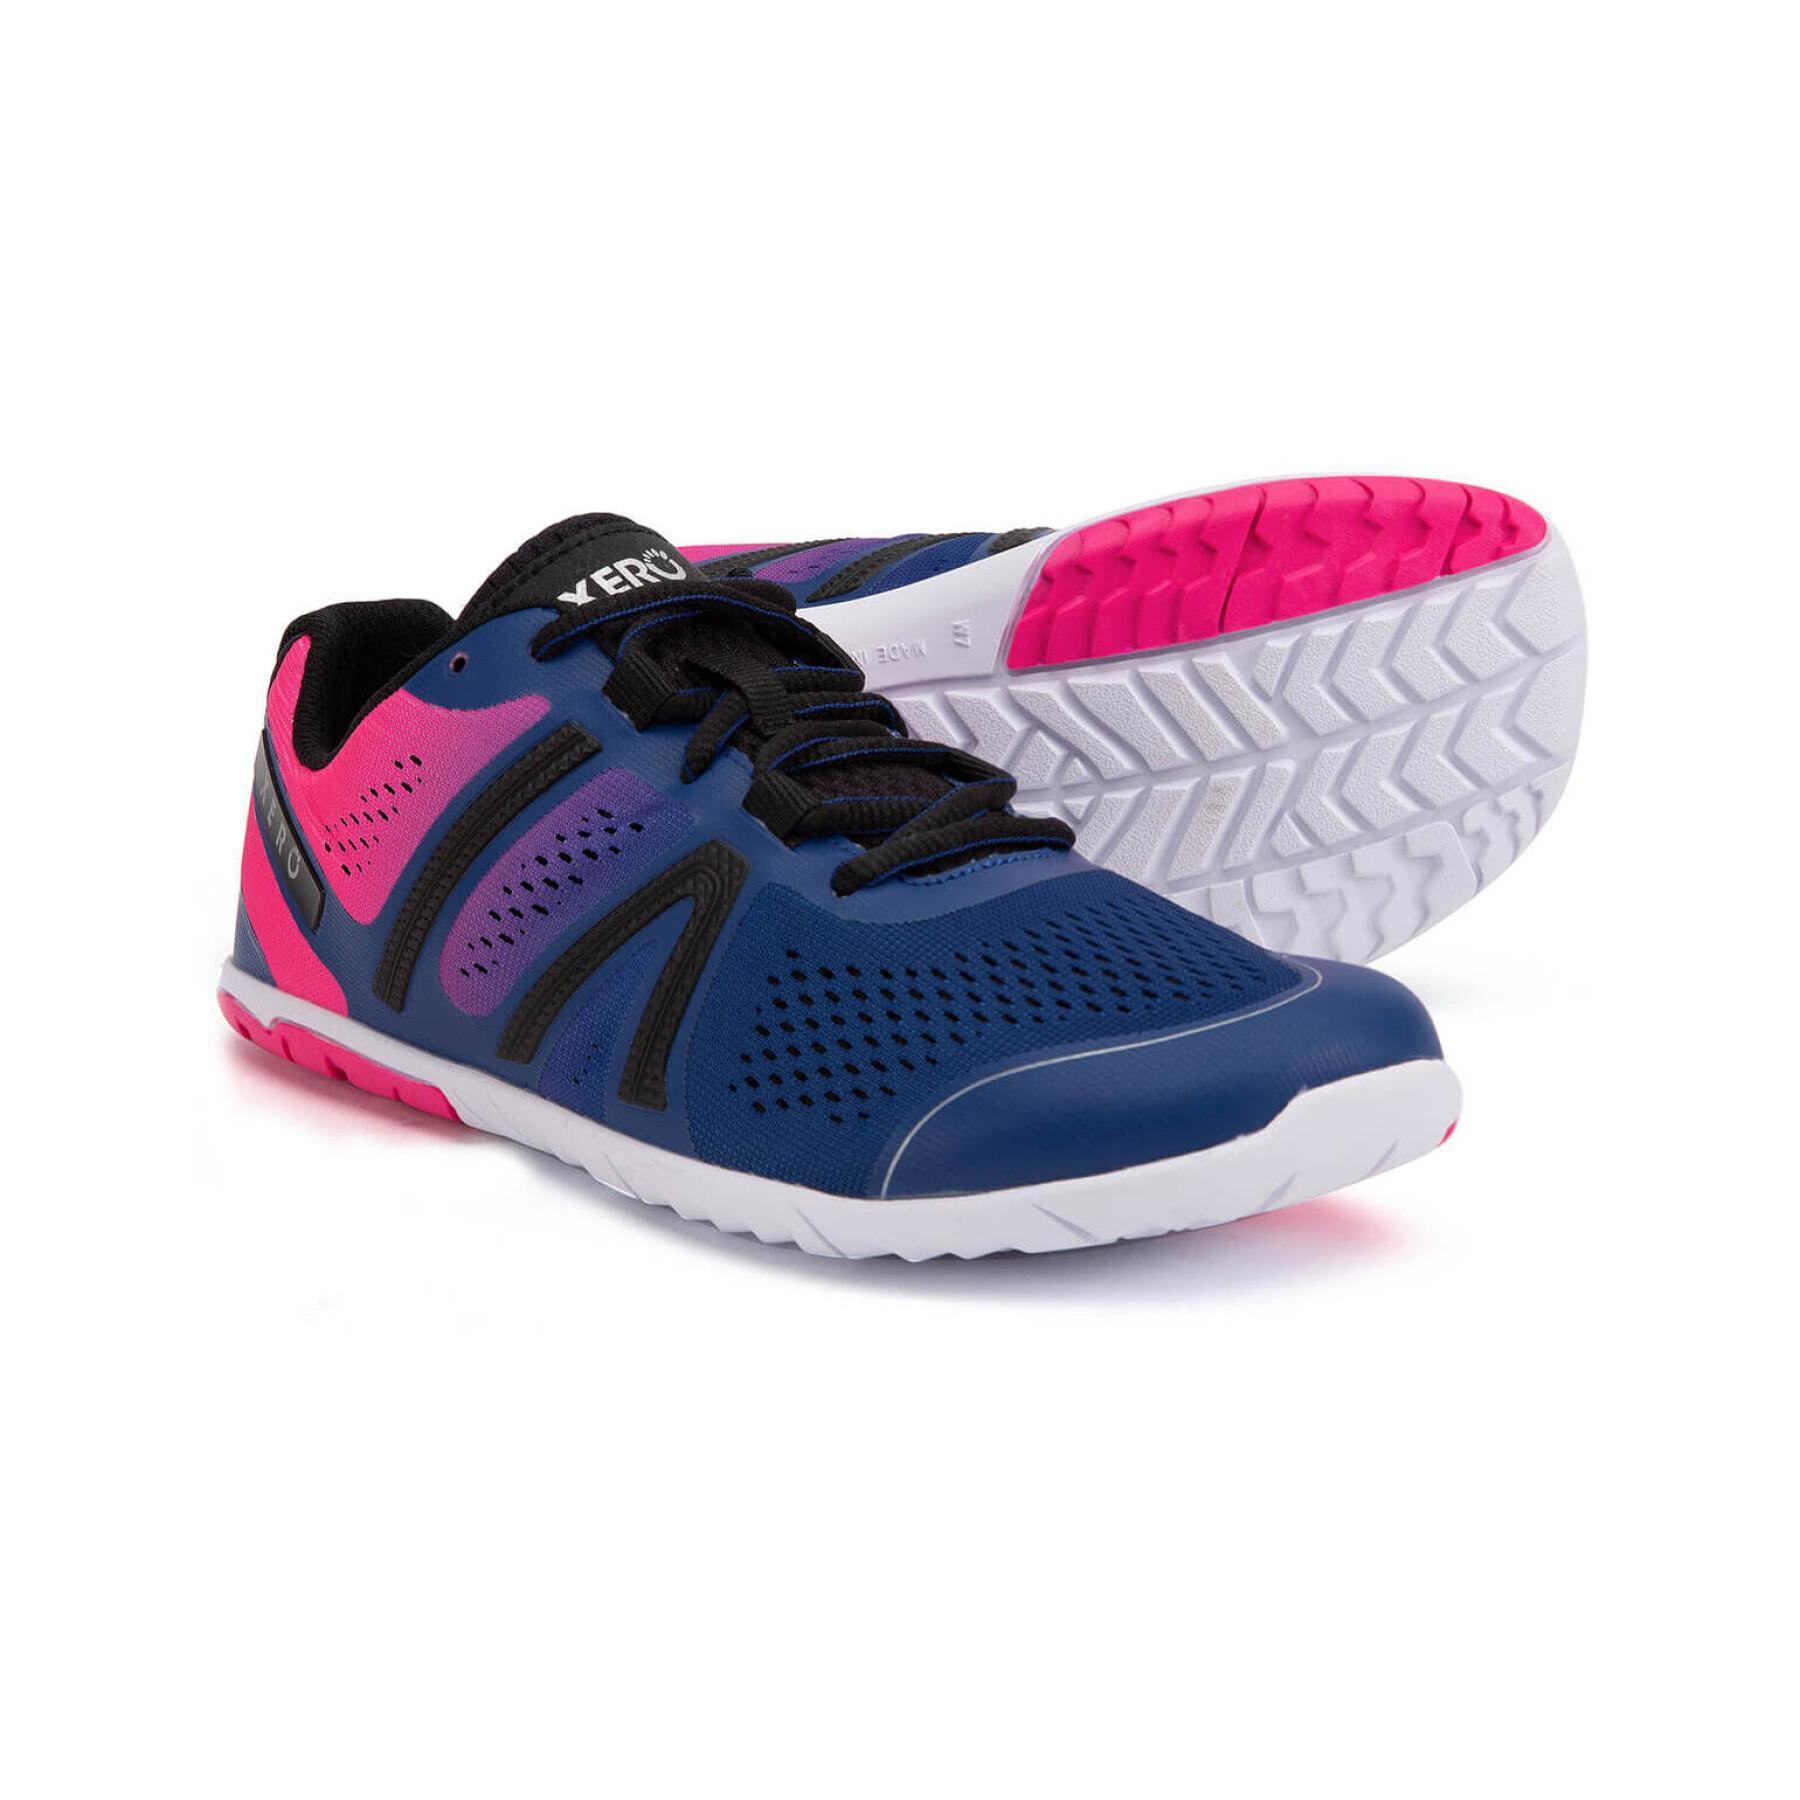 Women's running shoes Xero Shoes Forza